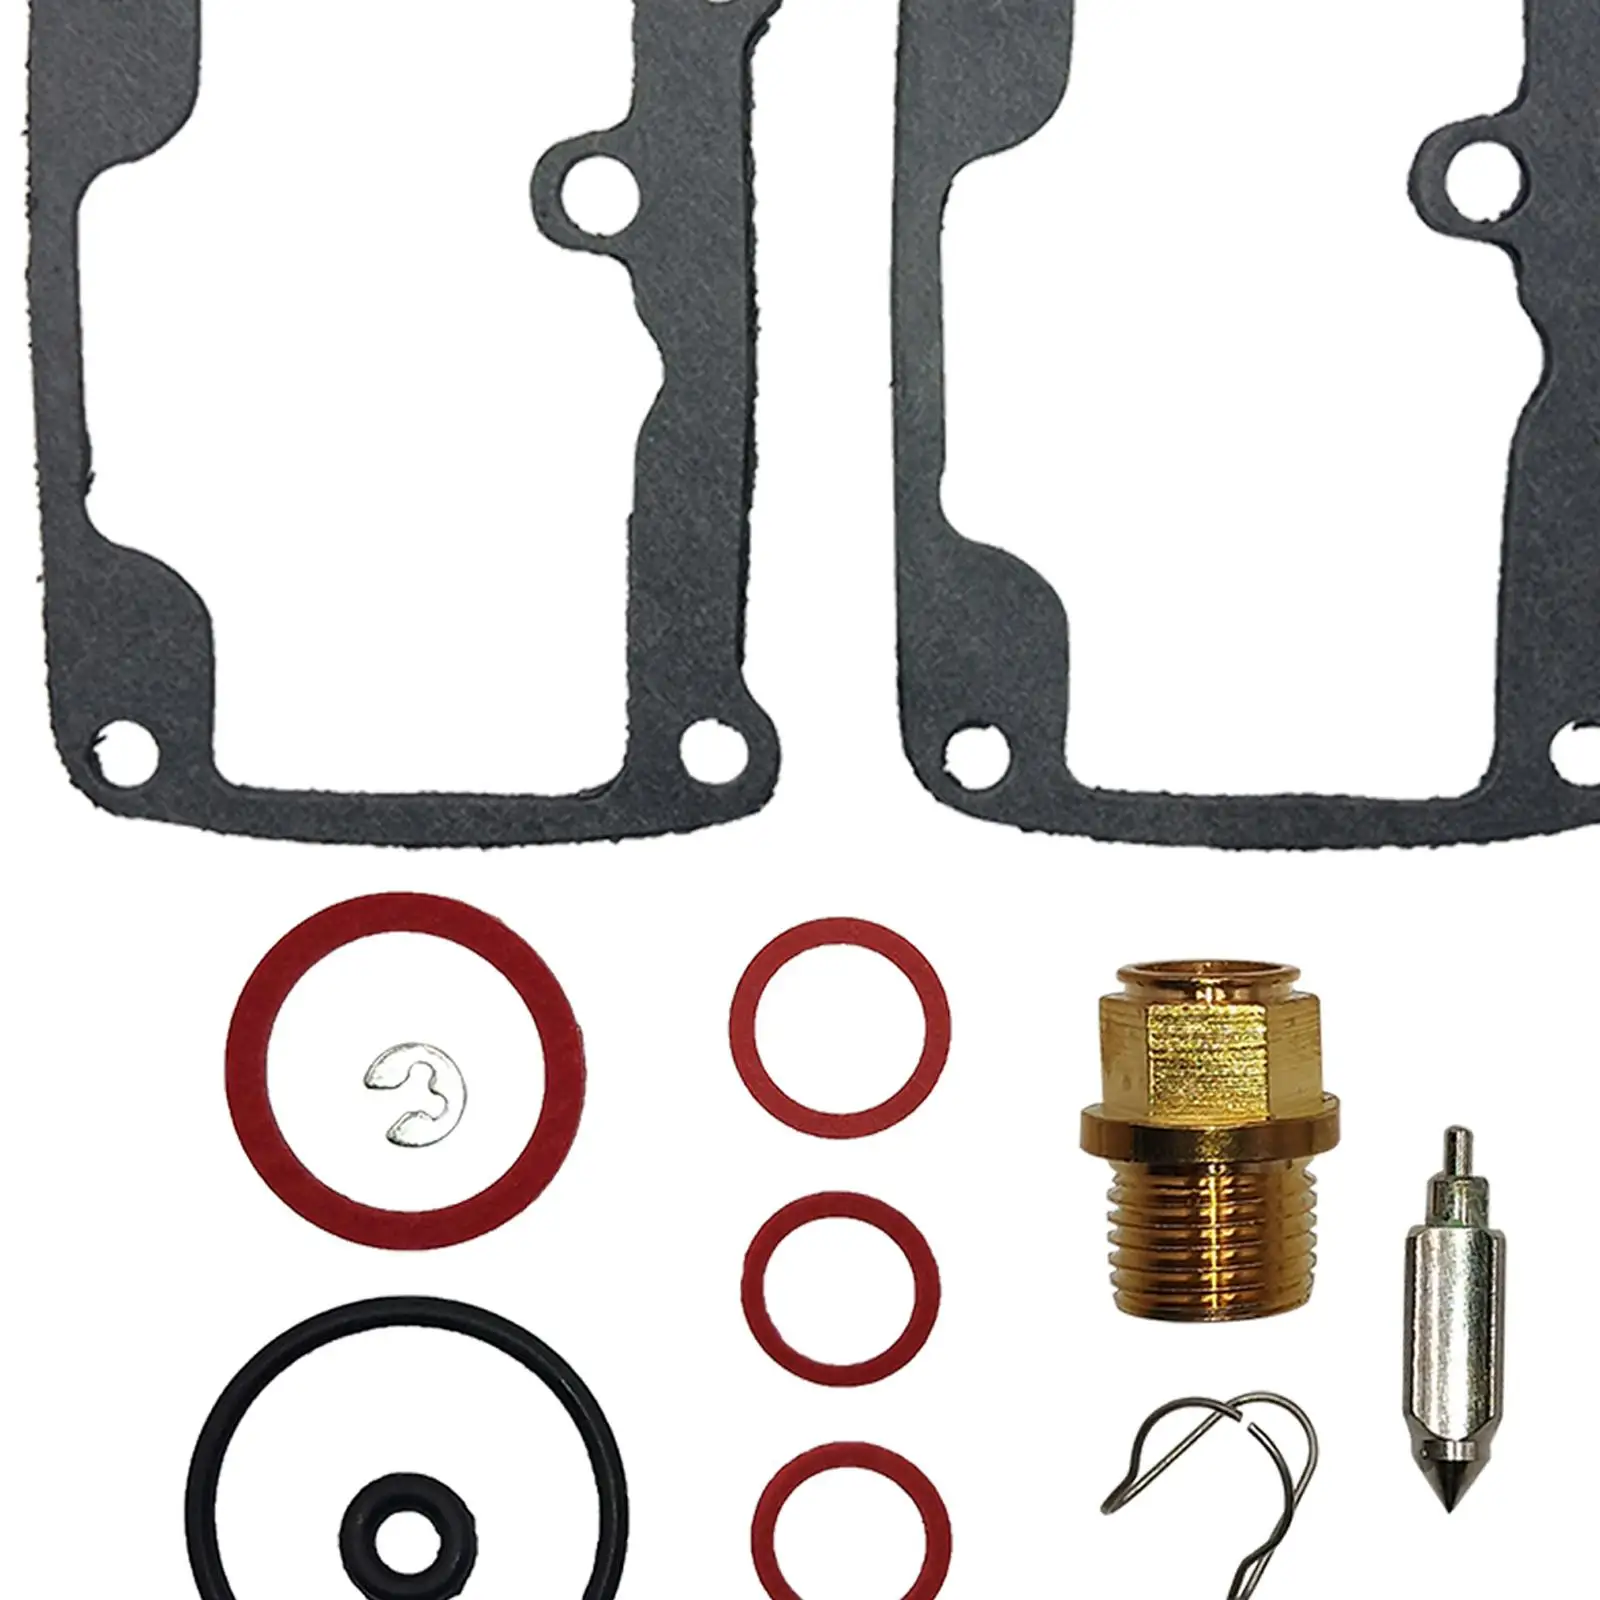 Professional Carb Carburetor Rebuild Repair Kit Direct Replaces, Easy